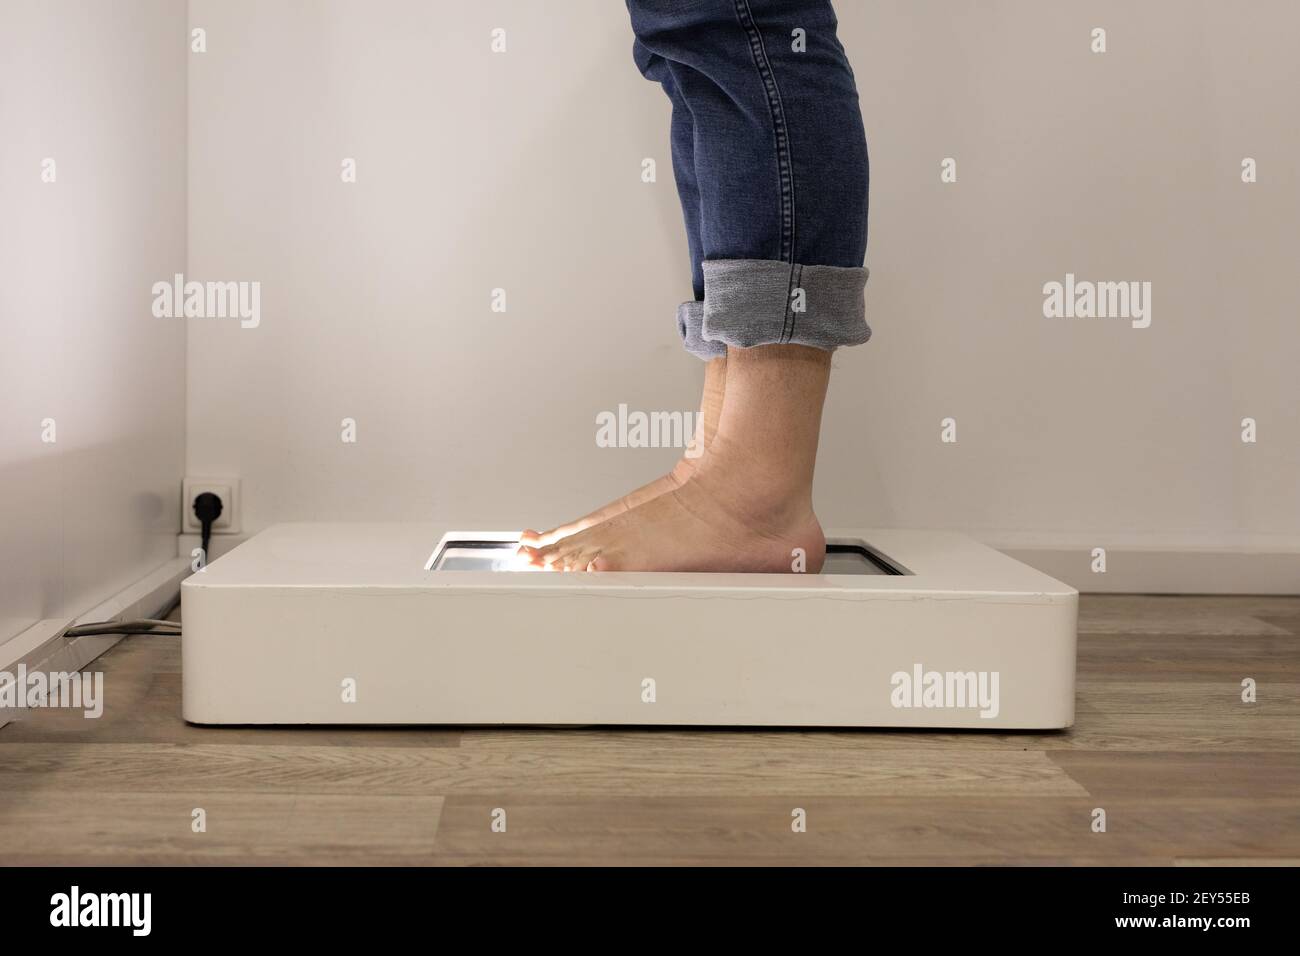 Fußscan zur Bestimmung der exakten Größe und Fußform. Mann, der das elektrische Gerät in einem Schuhgeschäft benutzt. Stockfoto